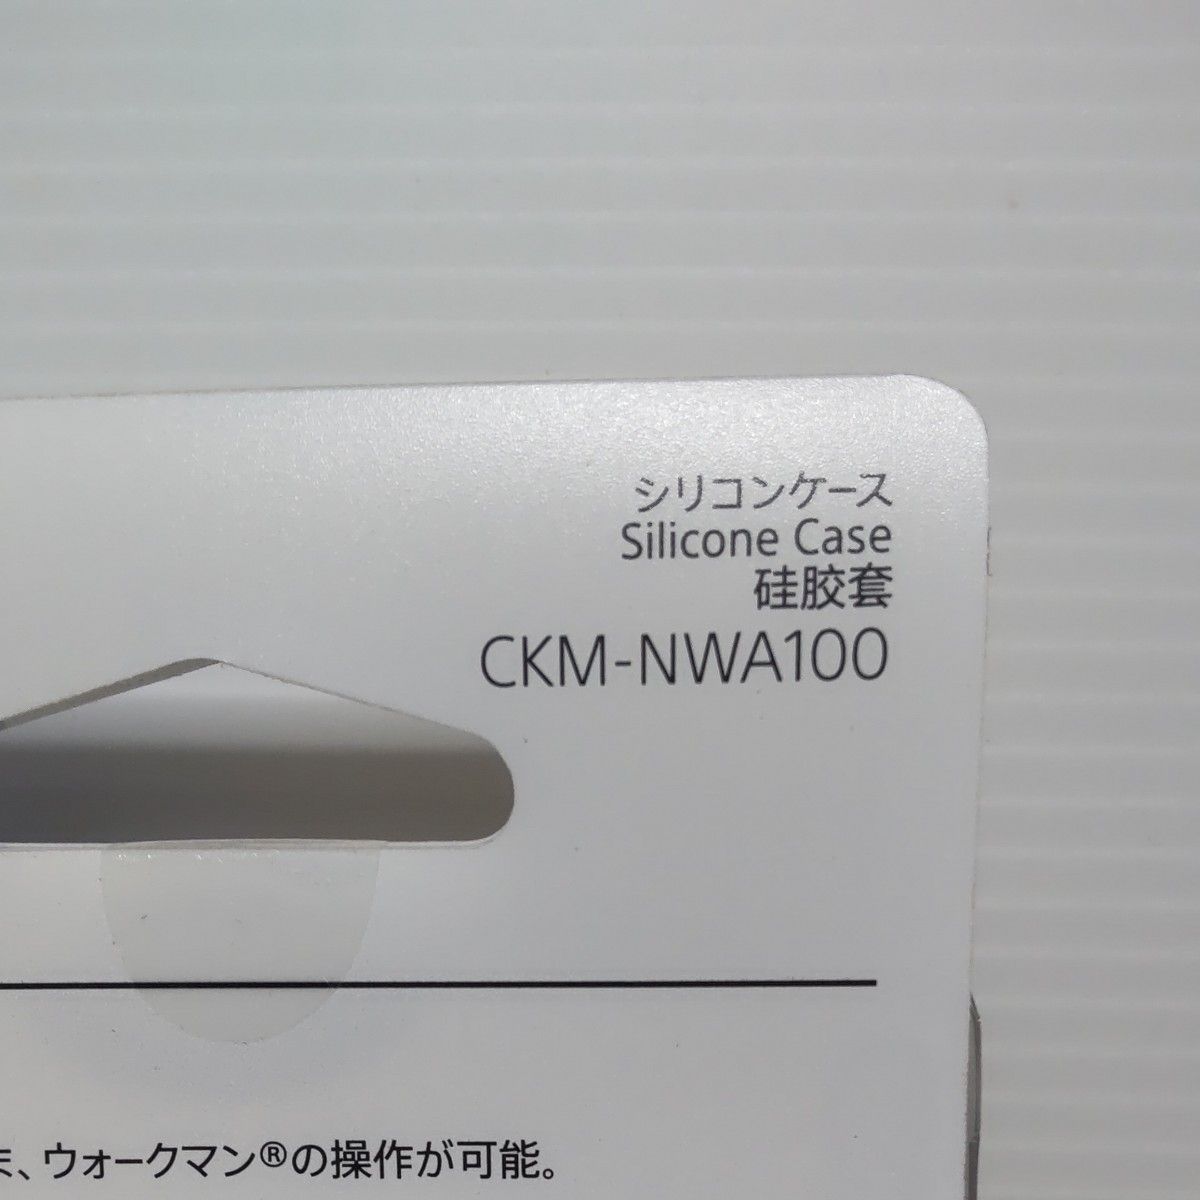 ソニー ウォークマン純正アクセサリー NW-A100シリーズ専用 シリコンケース ブルー CKM-NWA100 L